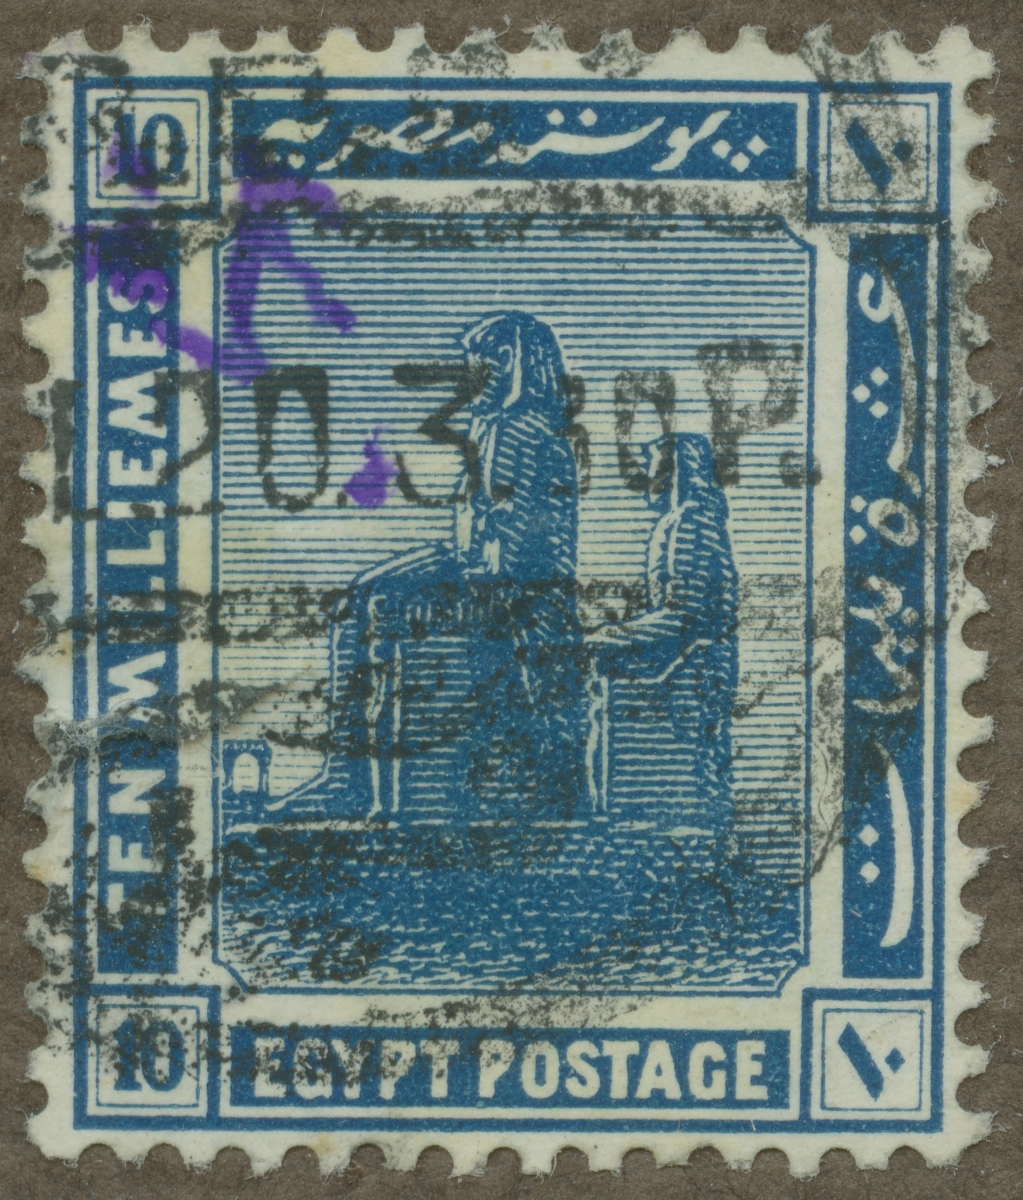 Frimärke ur Gösta Bodmans filatelistiska motivsamling, påbörjad 1950.
Frimärke från Egypten, 1914. Motiv av Memnonstoderna.